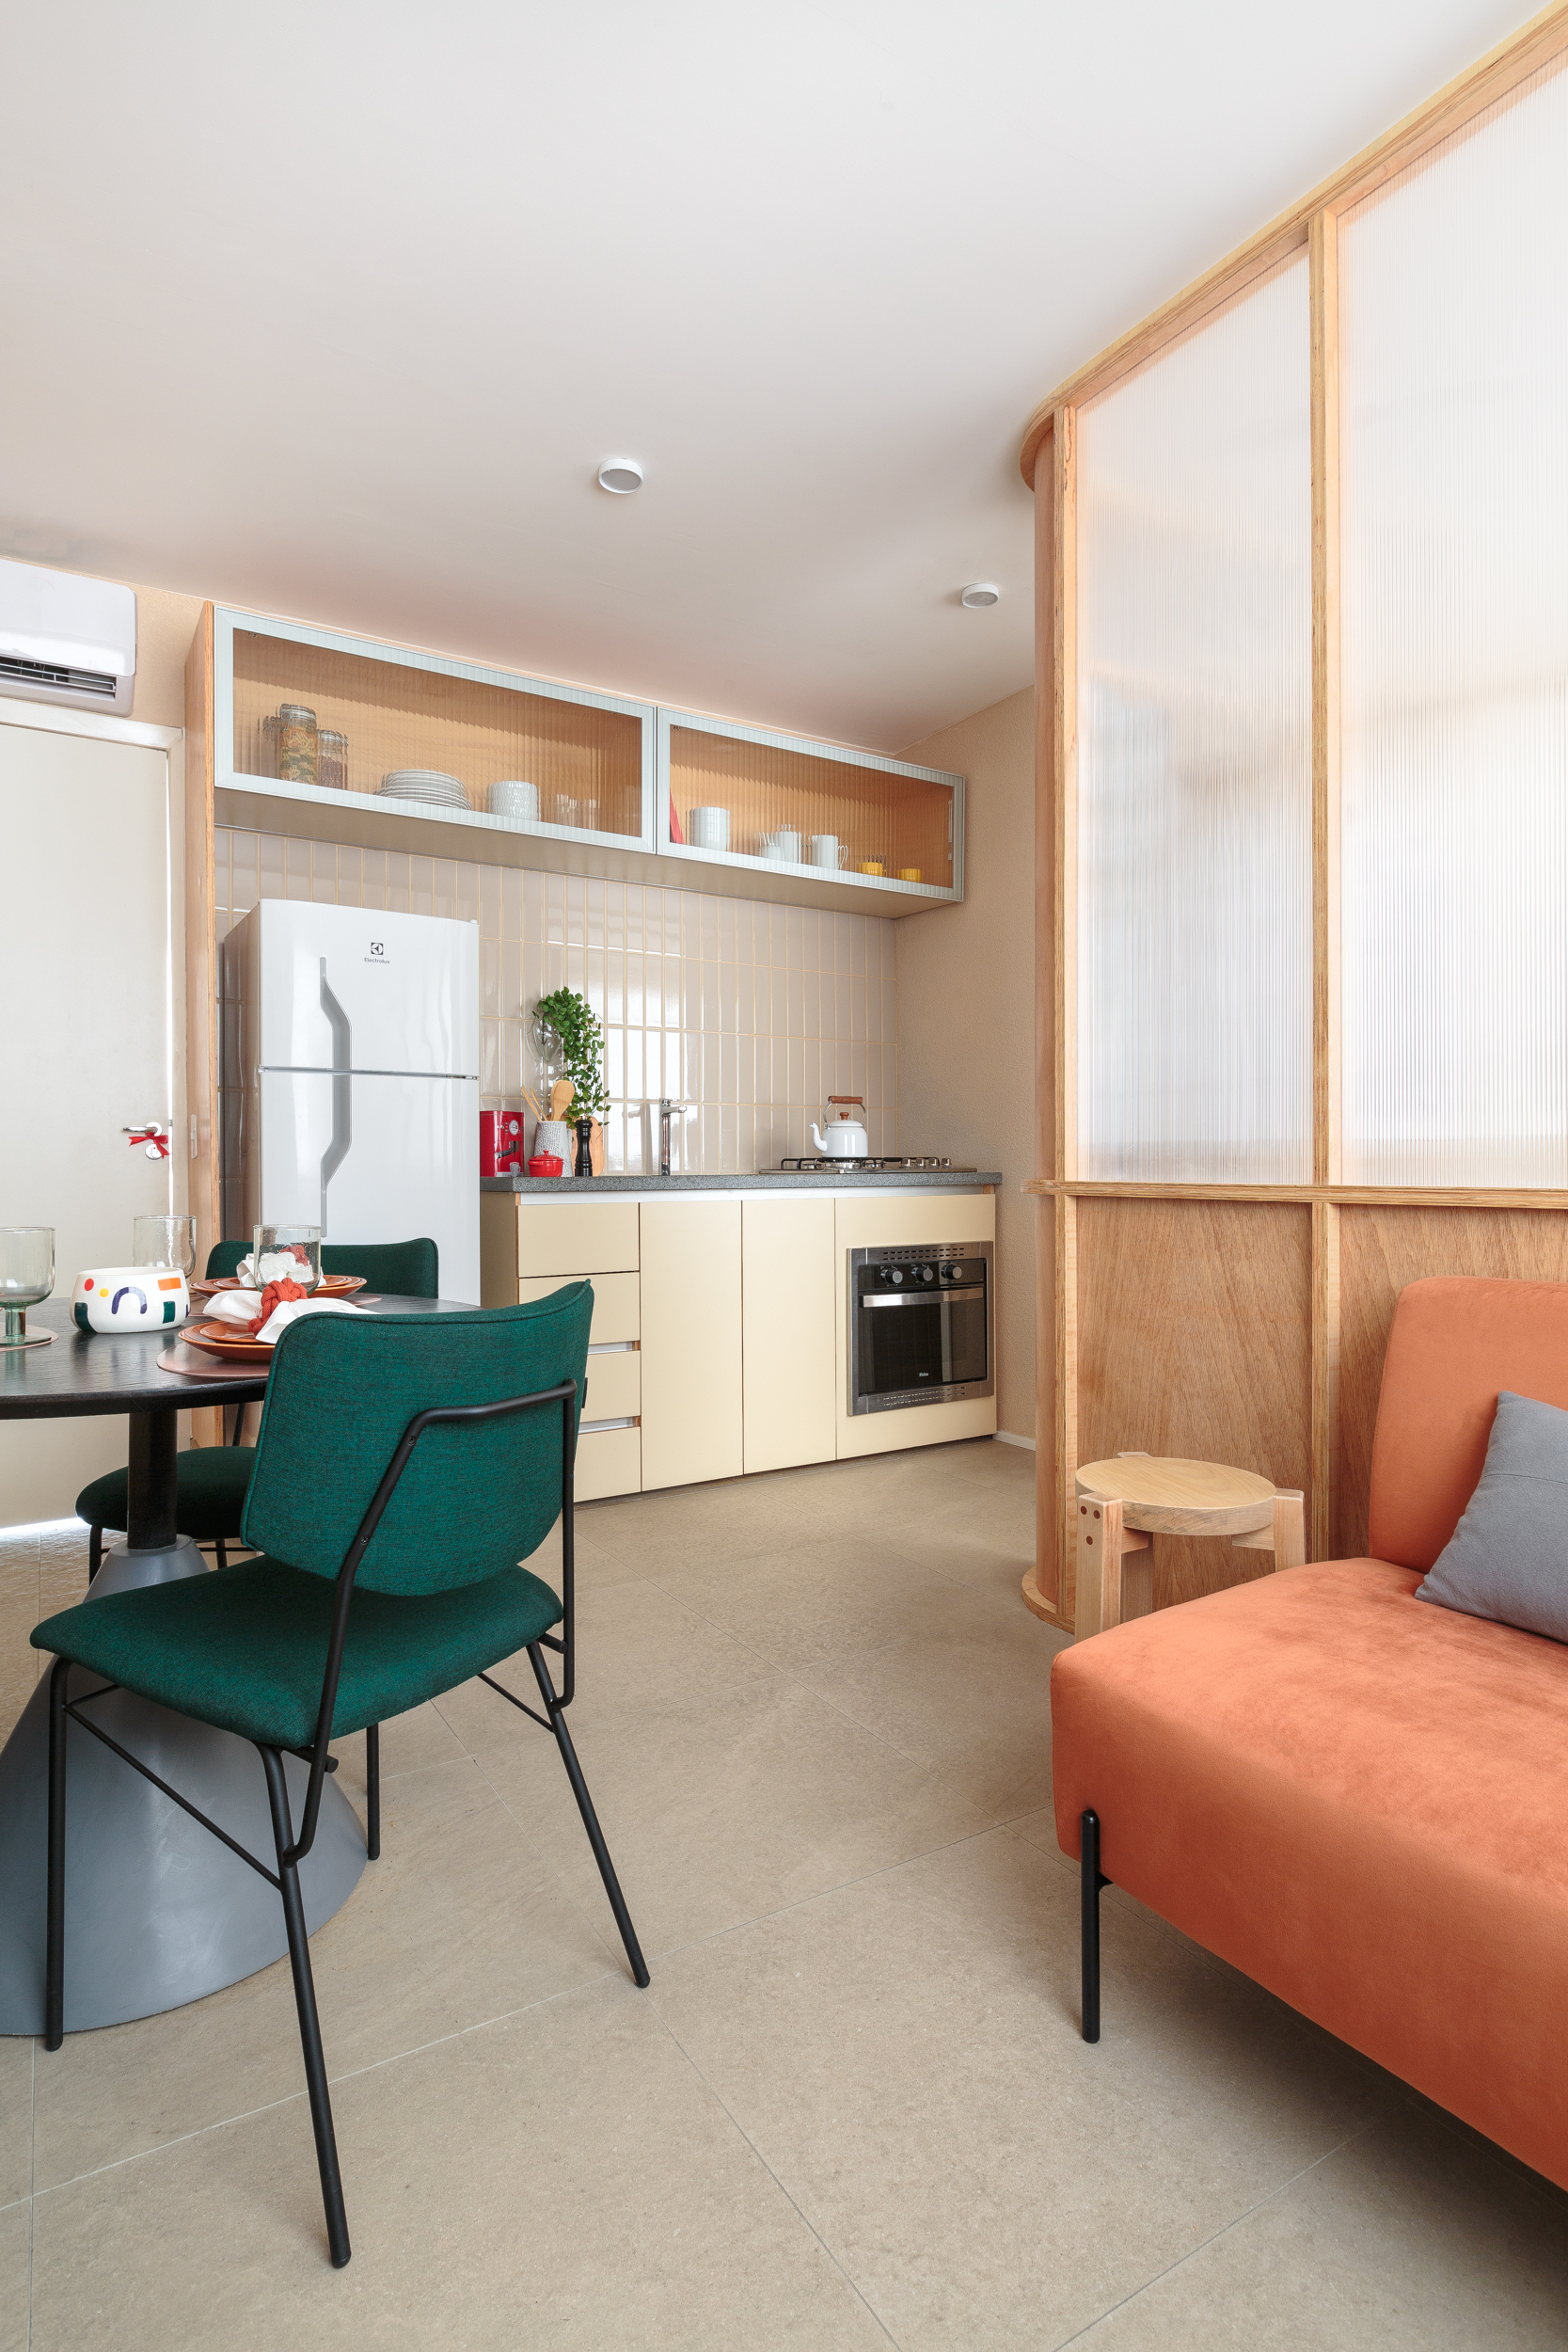 Painel translúcido e banco como rack otimizam o espaço em apê de 24 m². Projeto de Pro.a Arquitetos, Na foto, sala com sofá laranja e painel translúcido. Cozinha e sala de jantar,